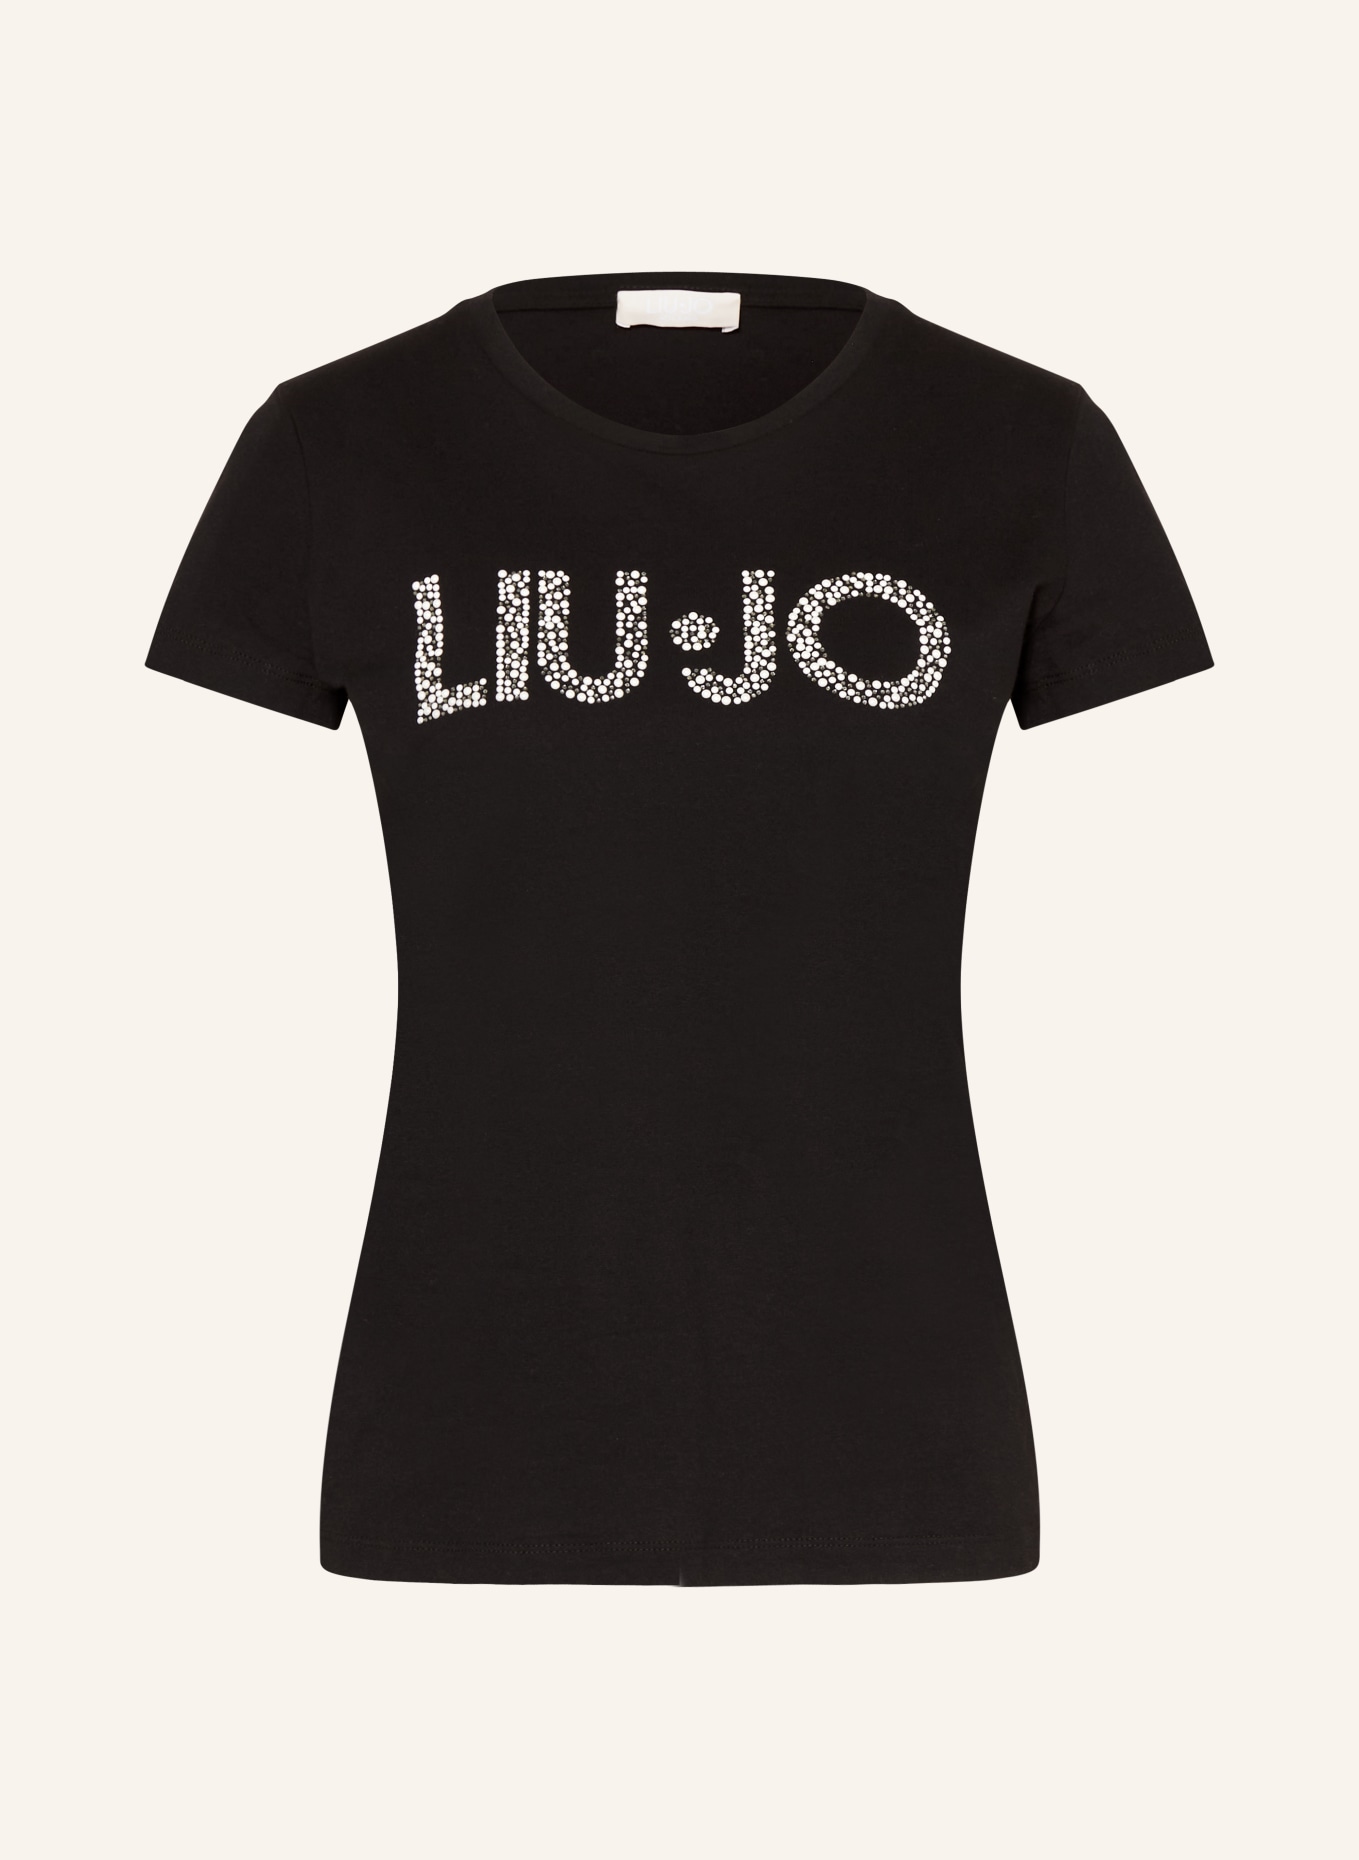 LIU JO T-Shirt mit Schmucksteinen und Schmuckperlen, Farbe: SCHWARZ (Bild 1)